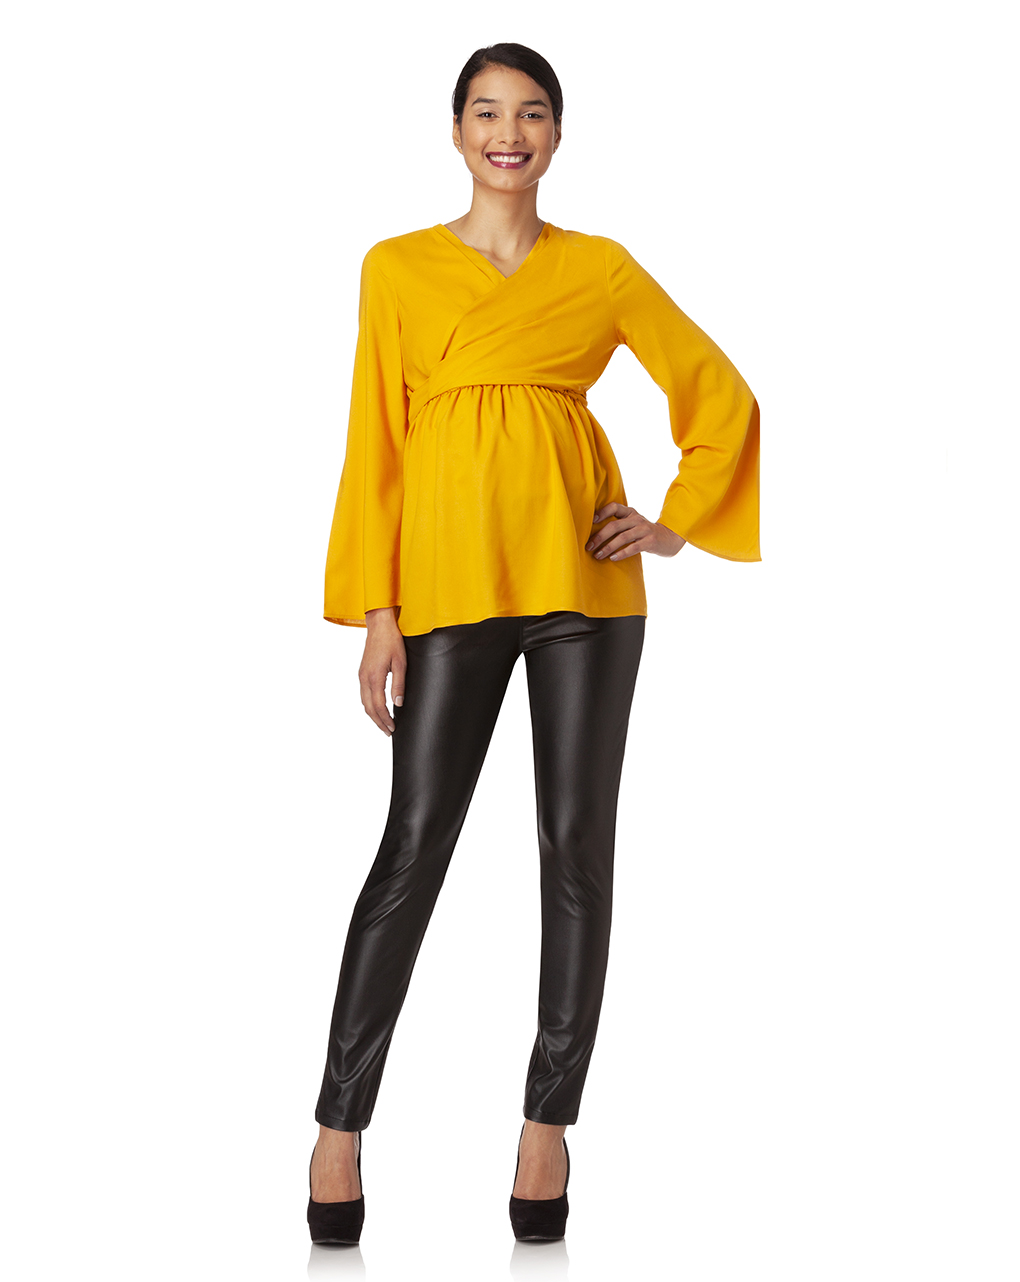 γυναικεία μπλούζα θηλασμού κίτρινη - Prénatal